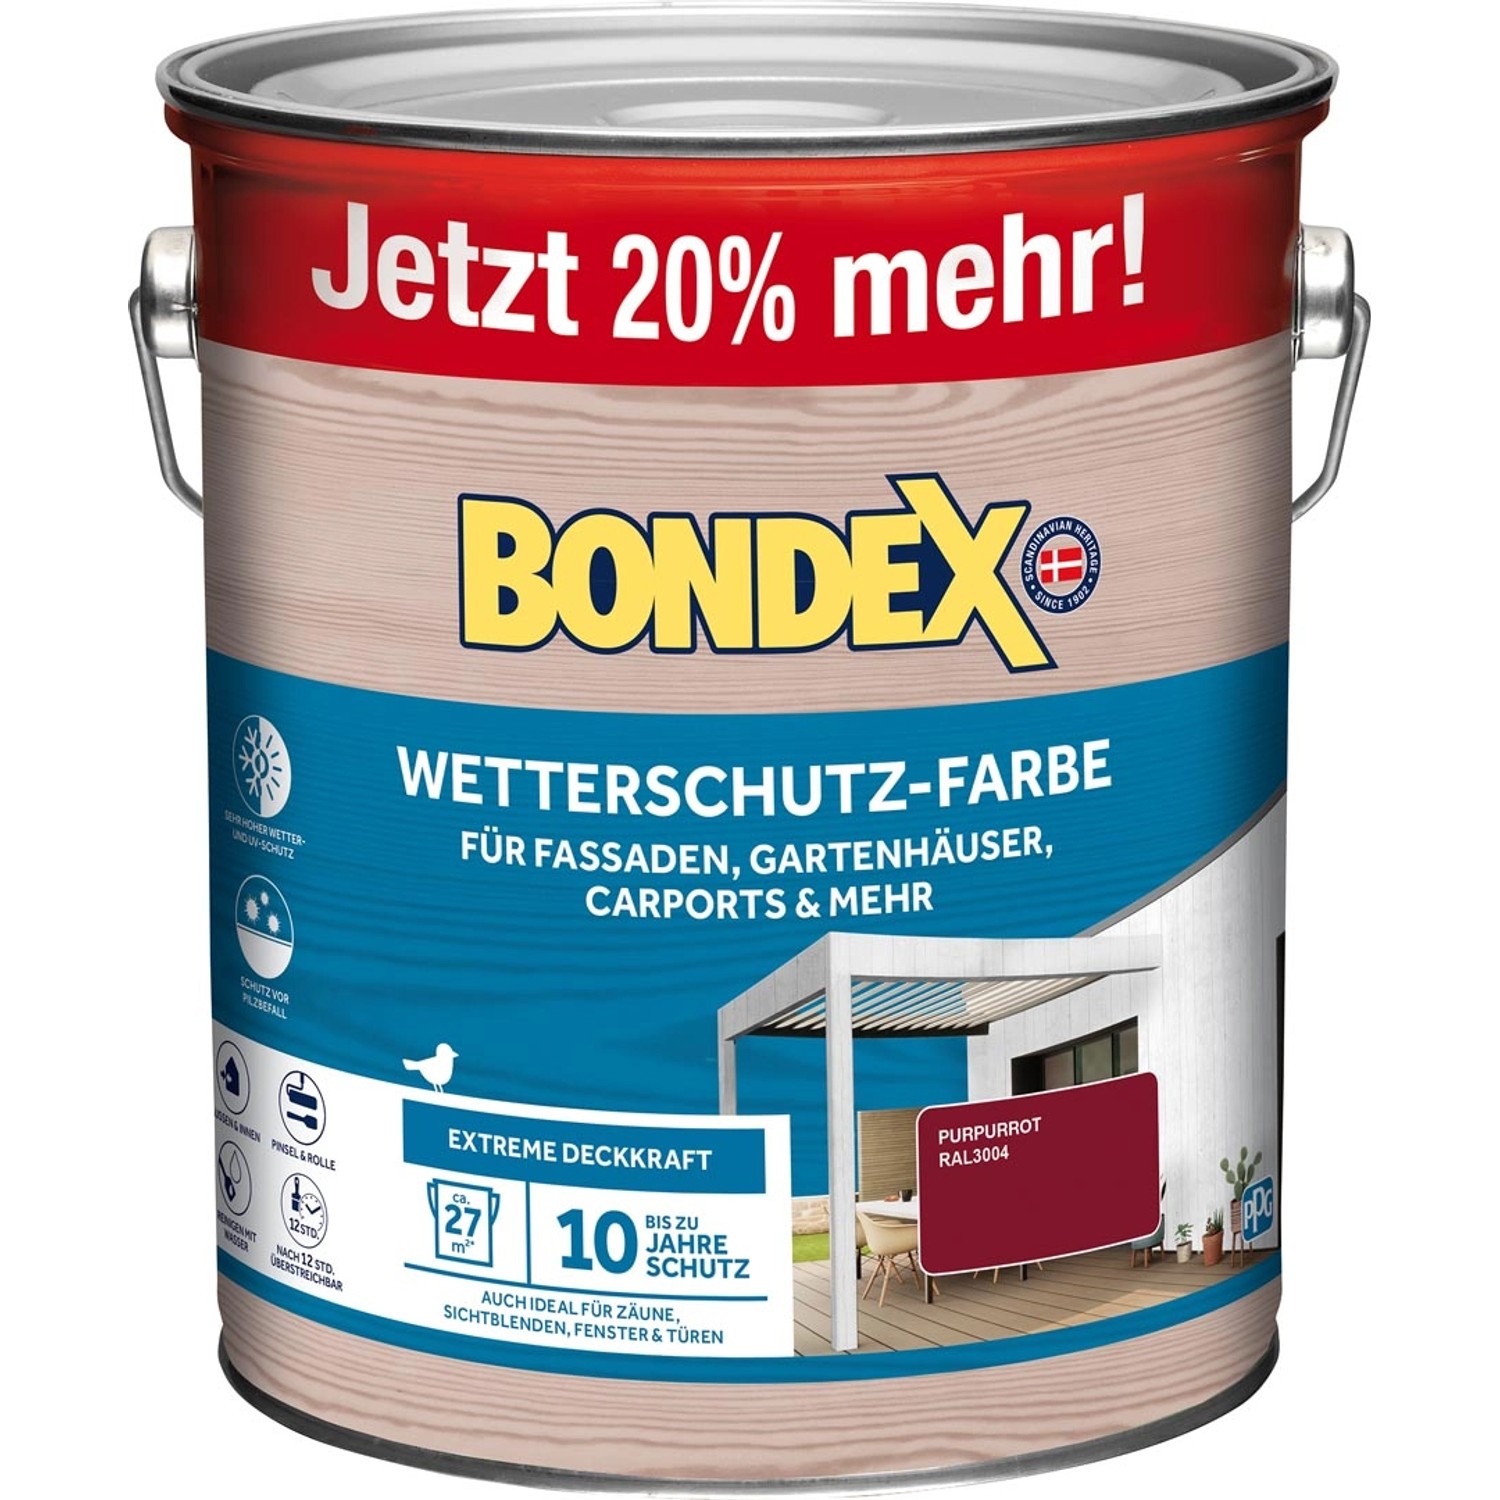 Bondex Wetterschutz-Farbe RAL 3004 Purpurrot - 3 l ausreichend für ca. 27 m²